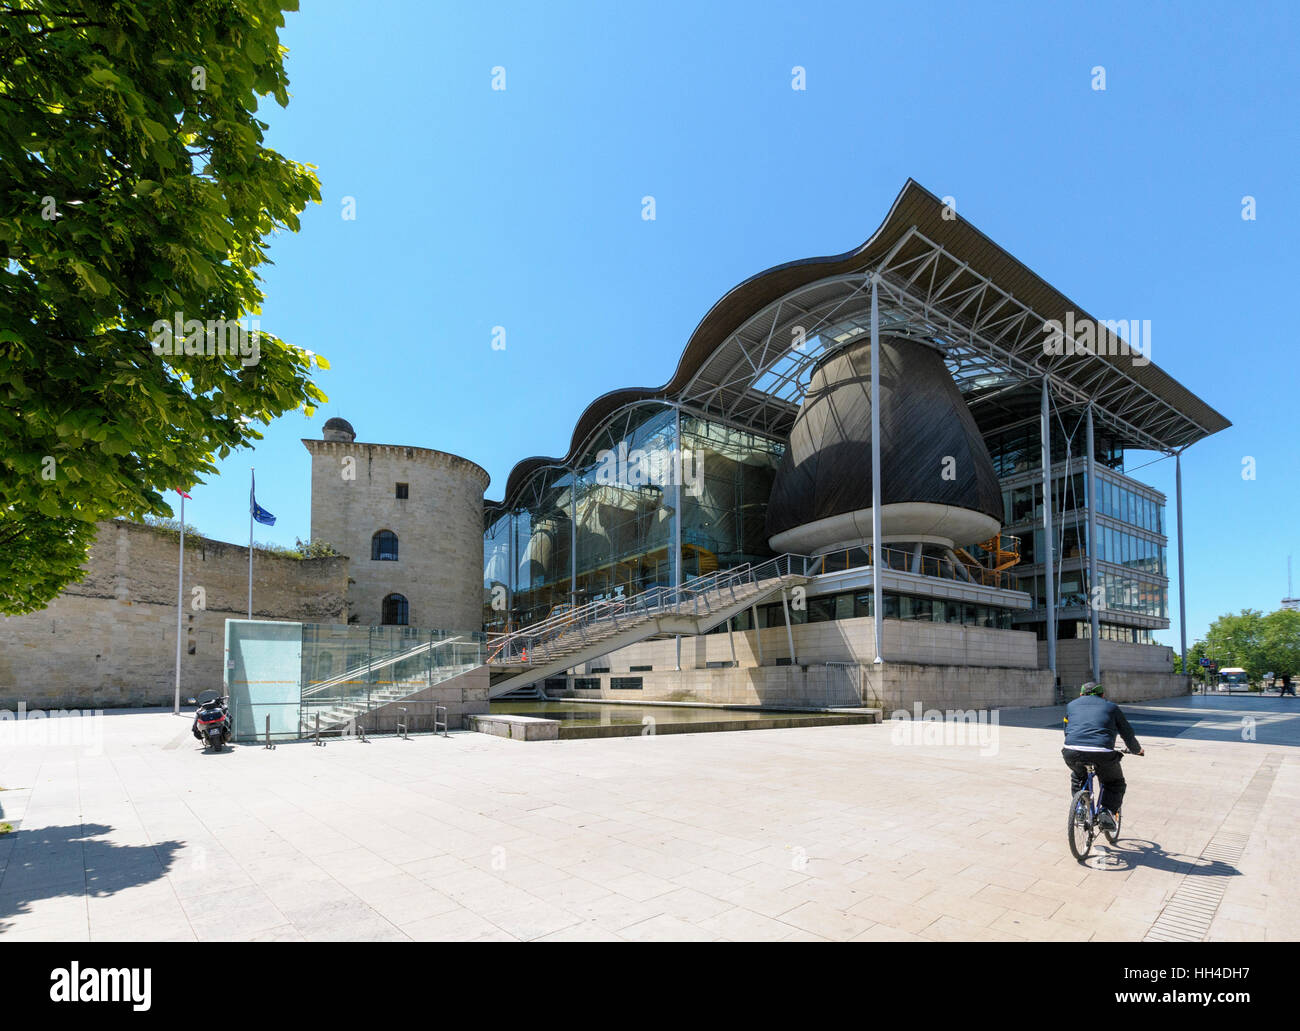 Tribunal de Grande Instance de Bordeaux, Bordeaux, Gironde, Aquitaine, France Stock Photo